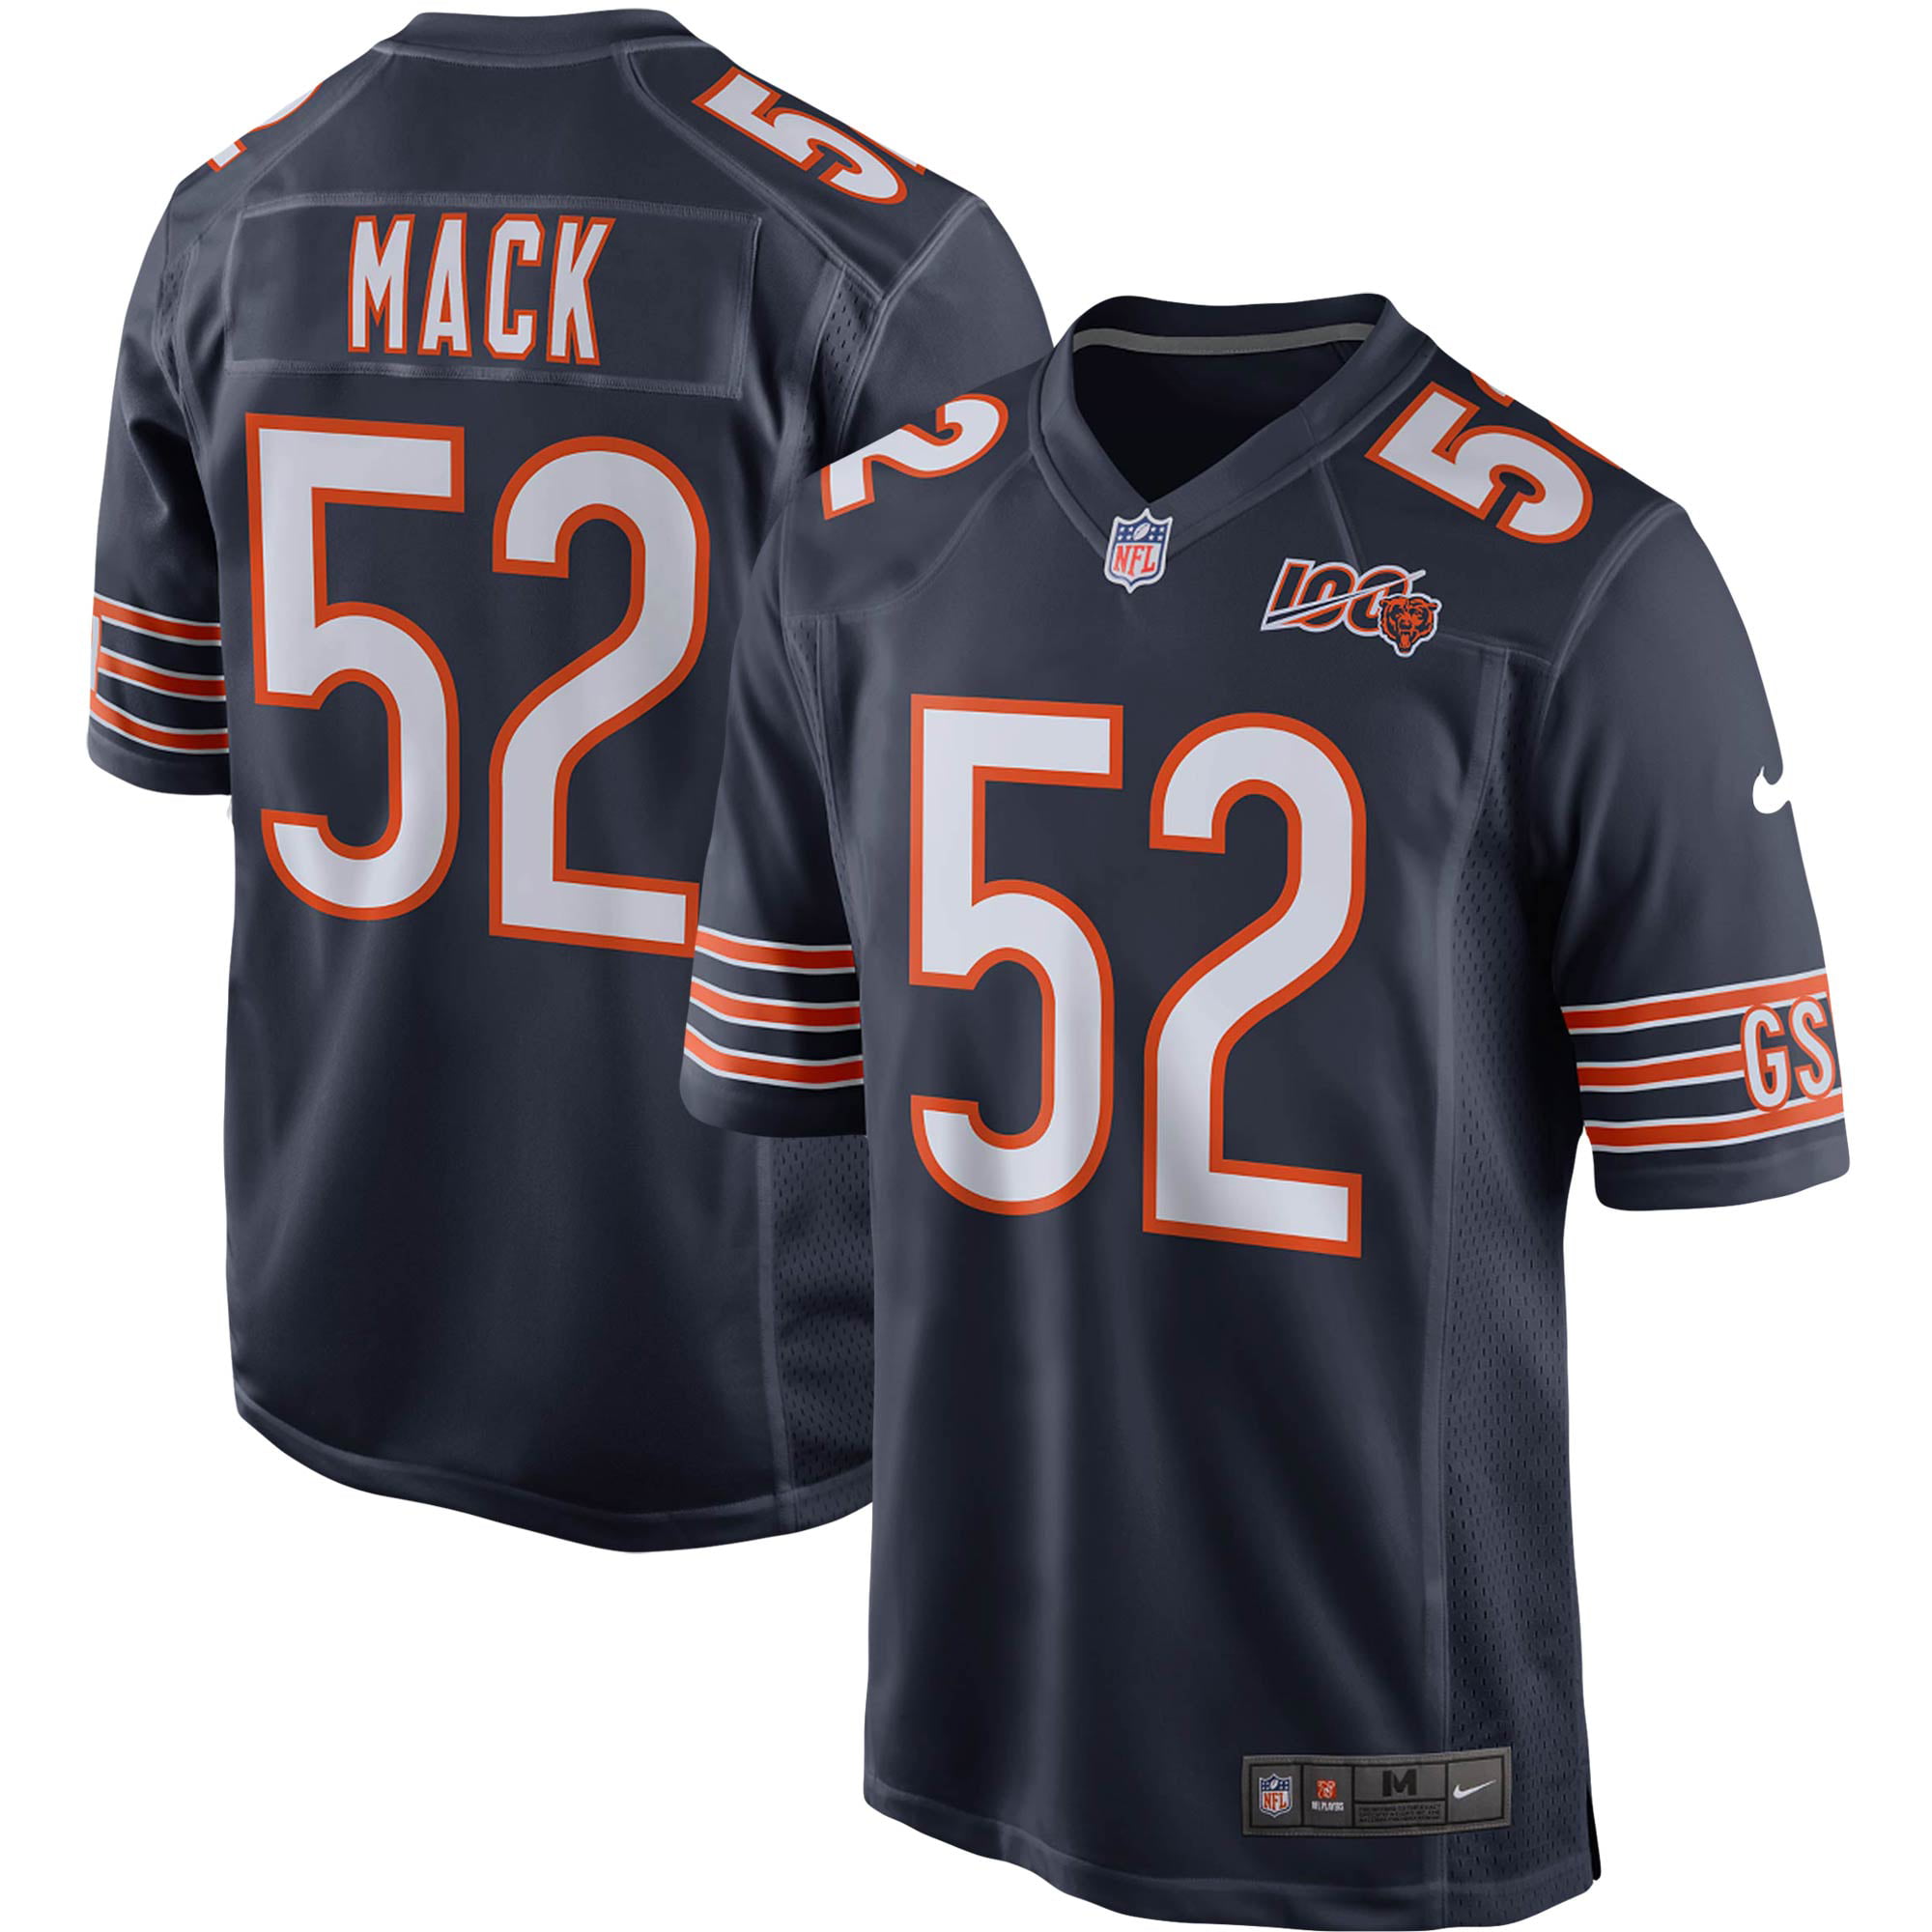 mack 52 bears jersey